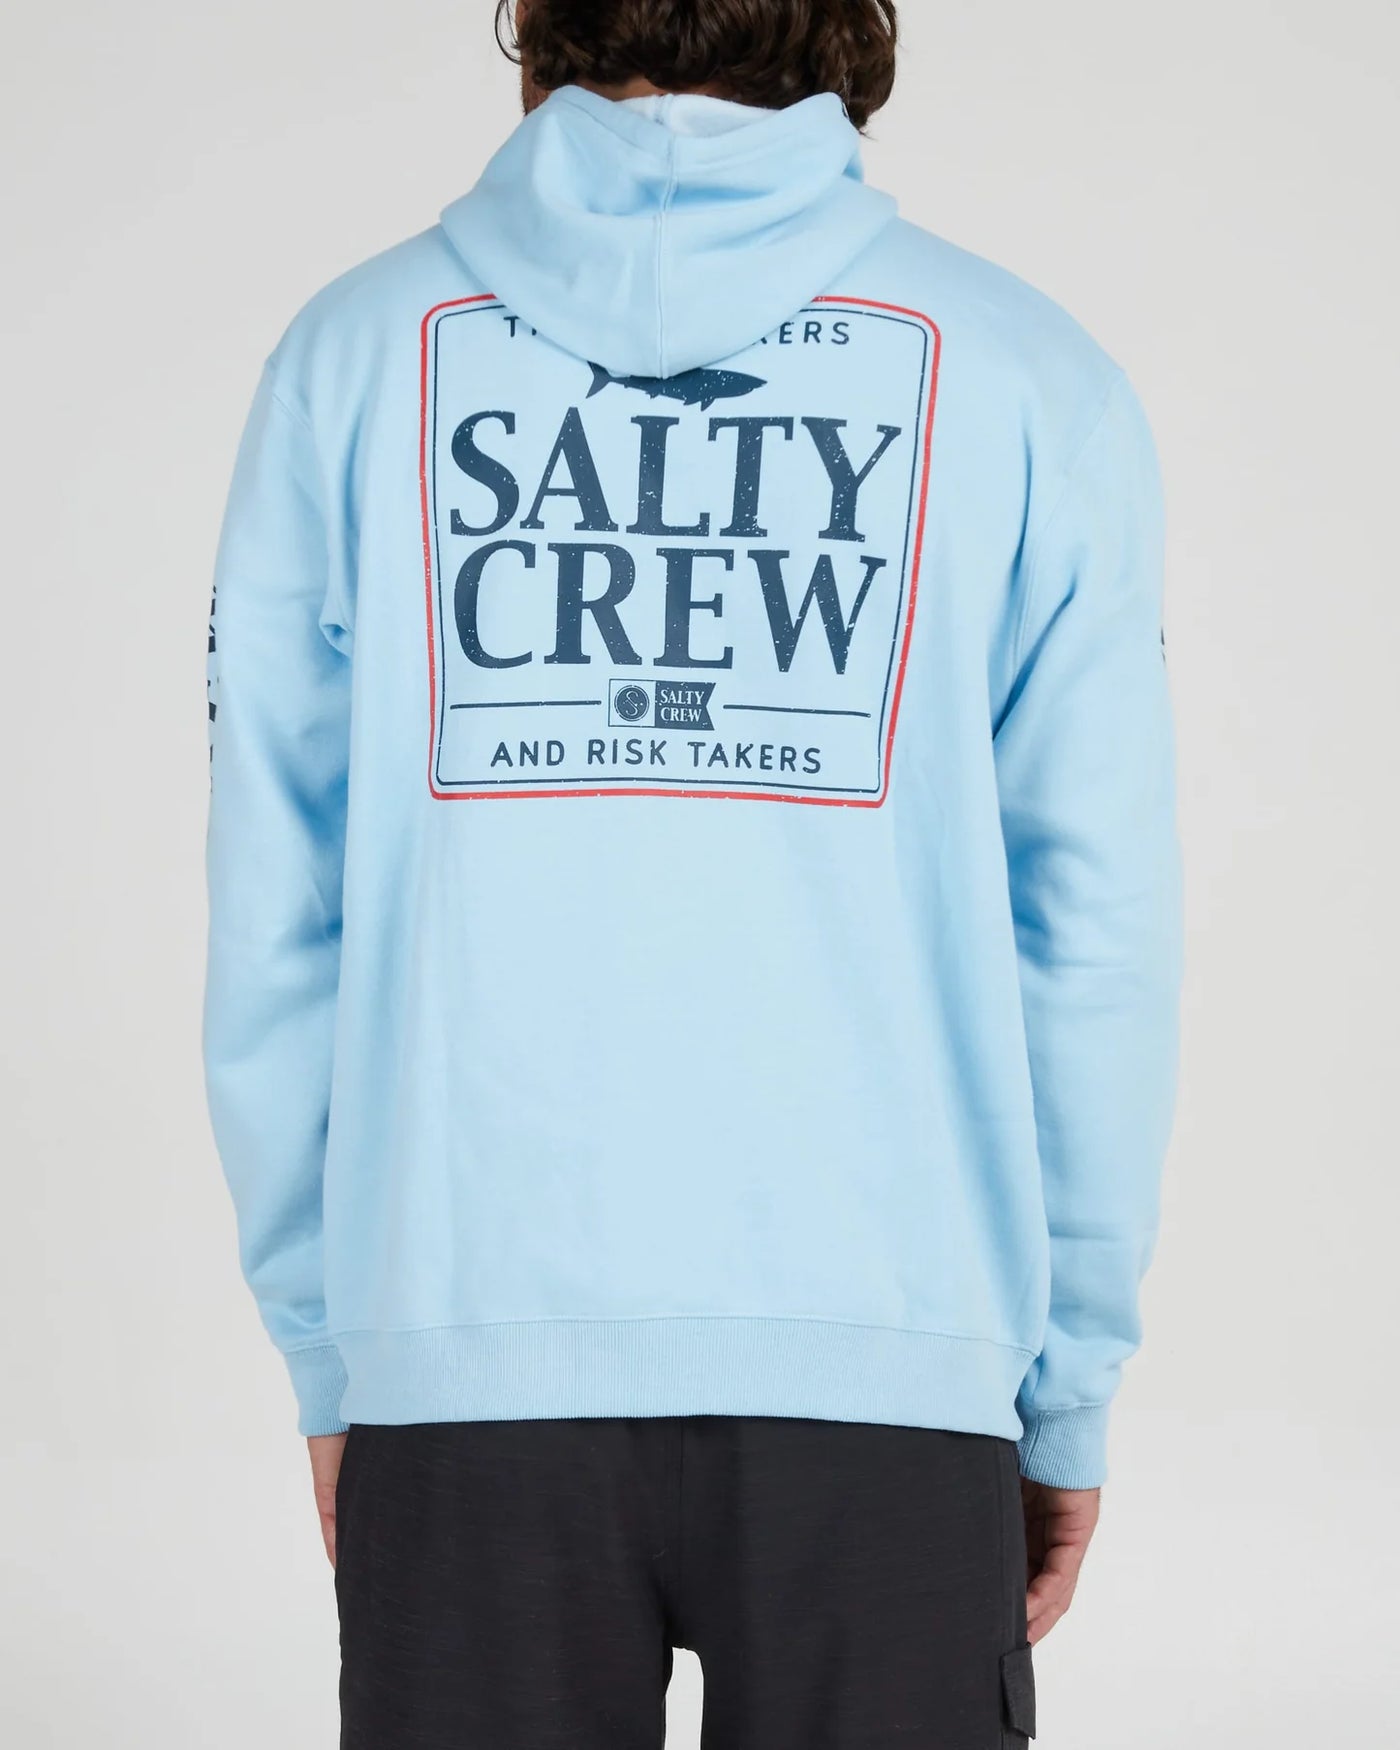 Salty Crew Coaster Zip Fleece Sudadera Hombre